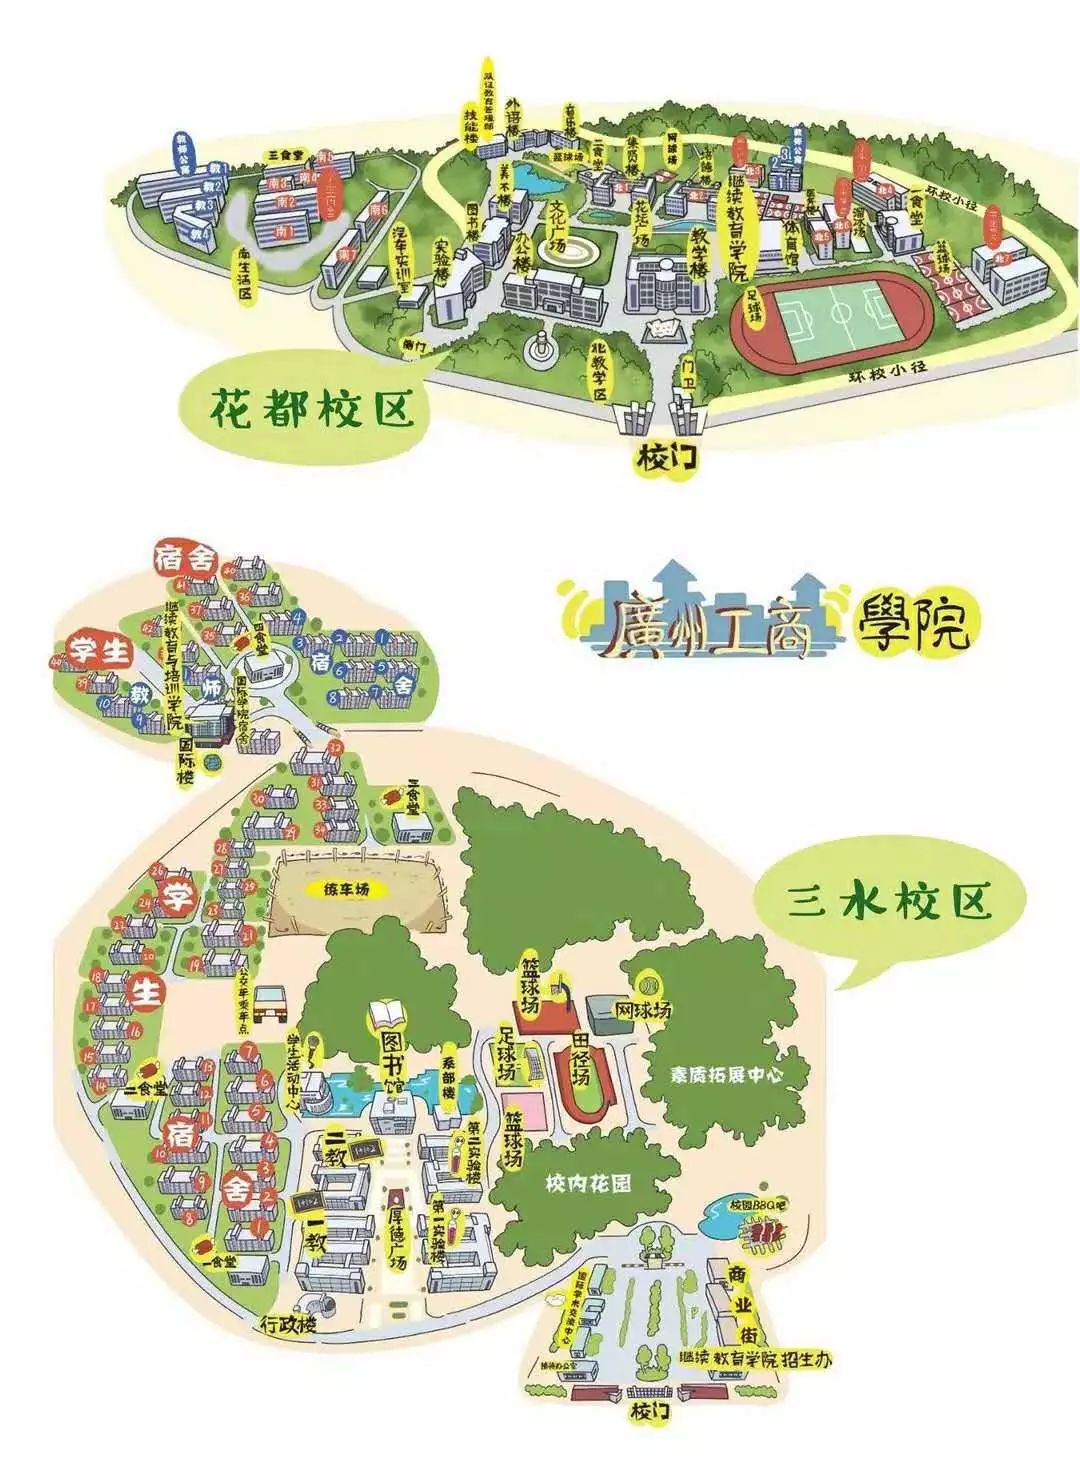 三水校区风光-广州工商学院—三水校区管委会